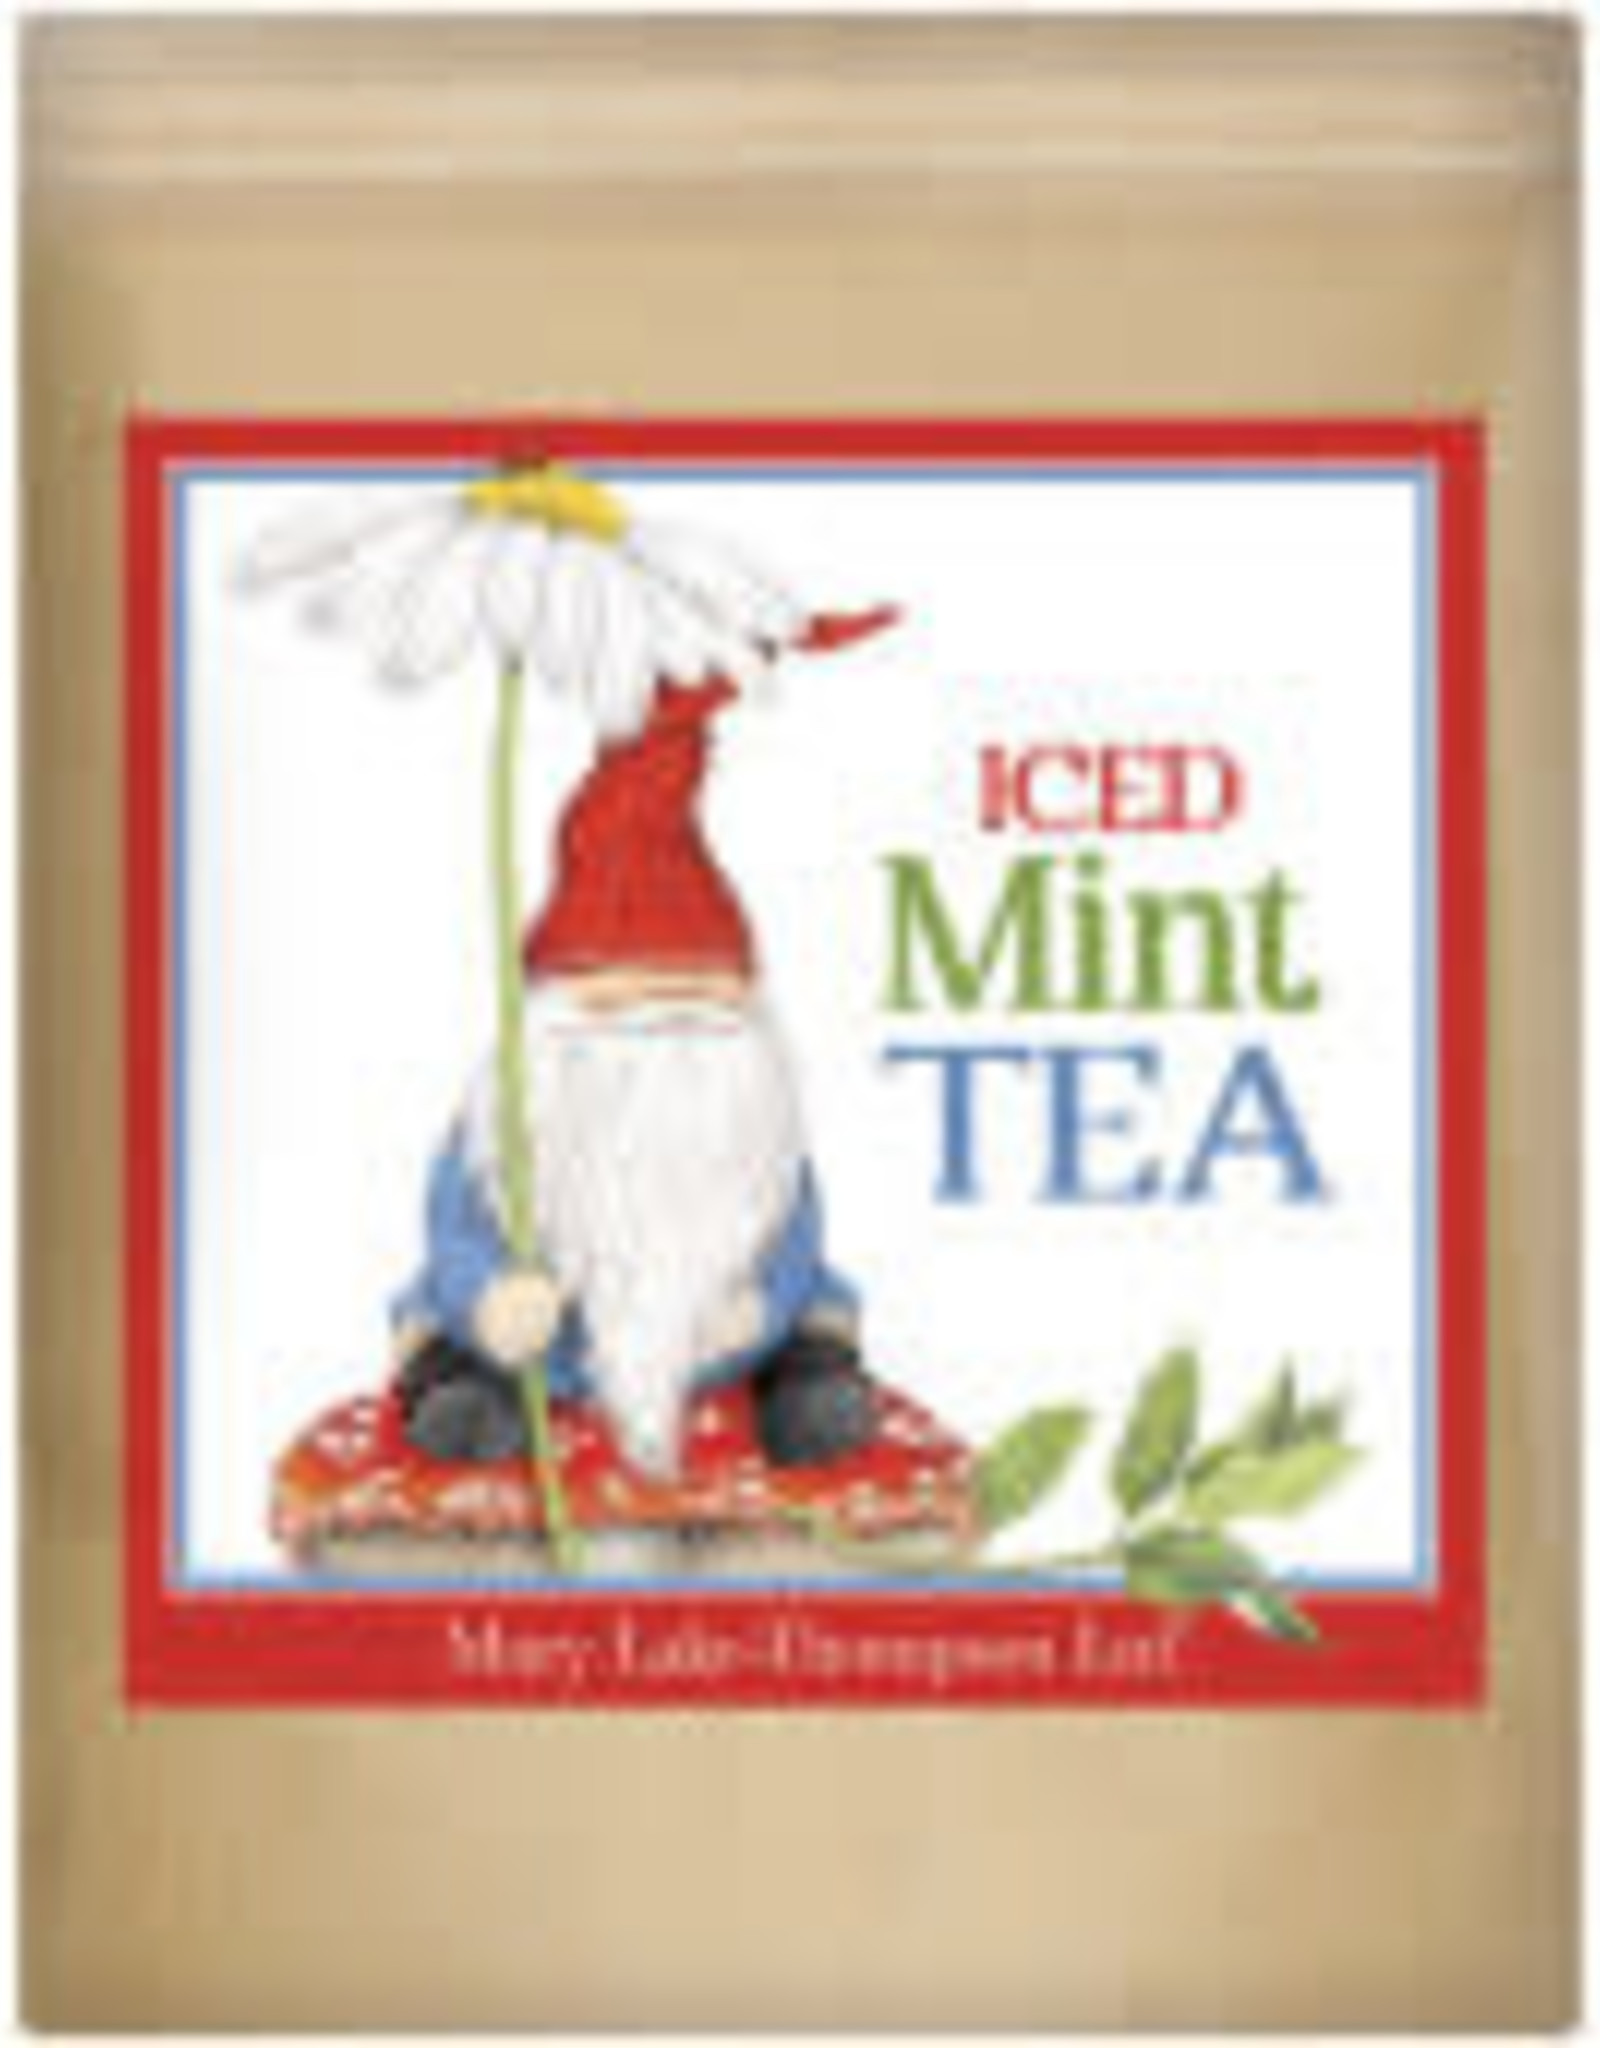 Mary Lake Thompson Tea: Gnome